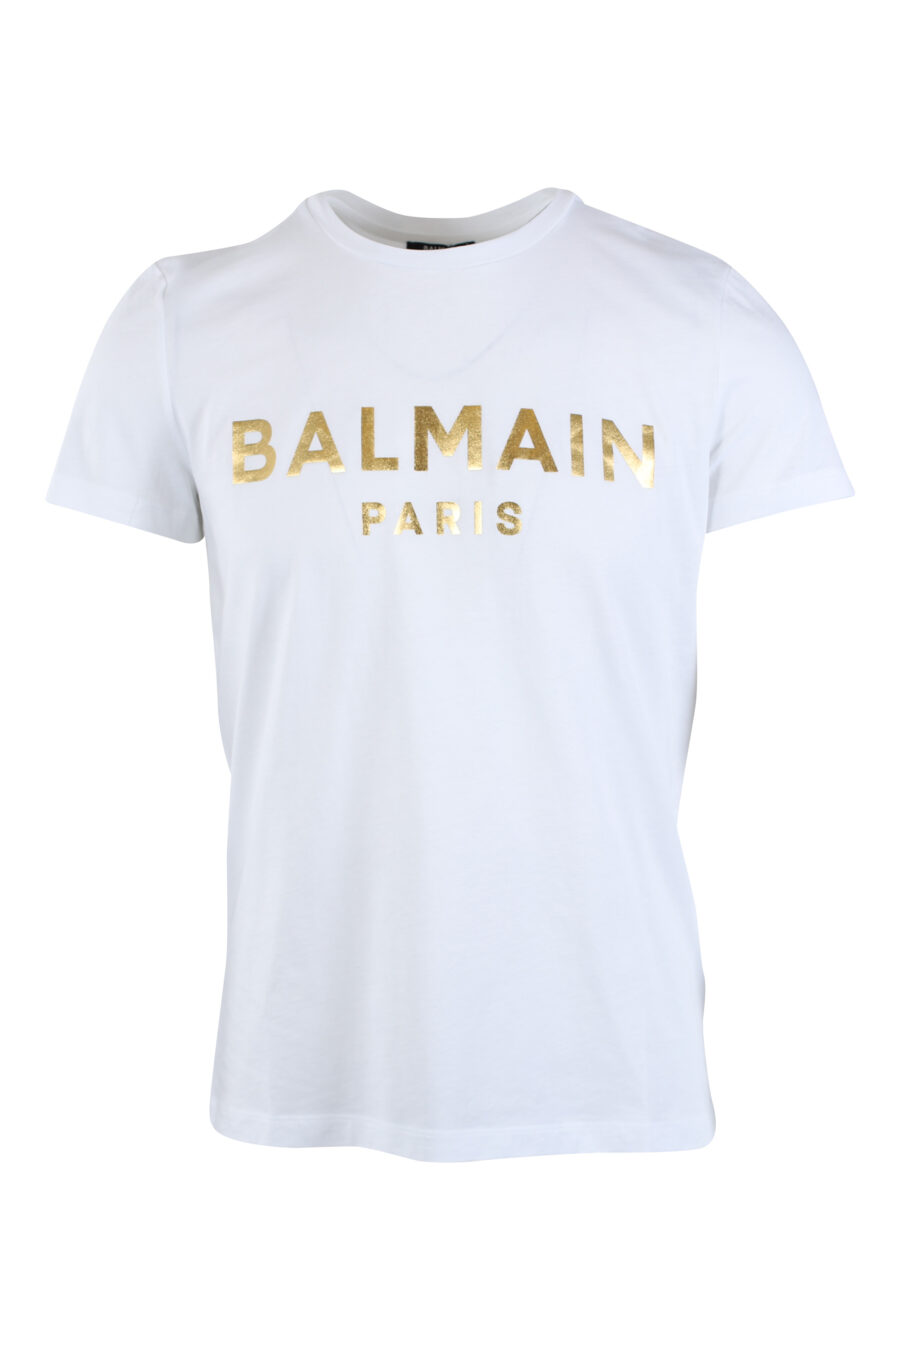 Camiseta blanca con maxilogo dorado "paris" - IMG 2611 1